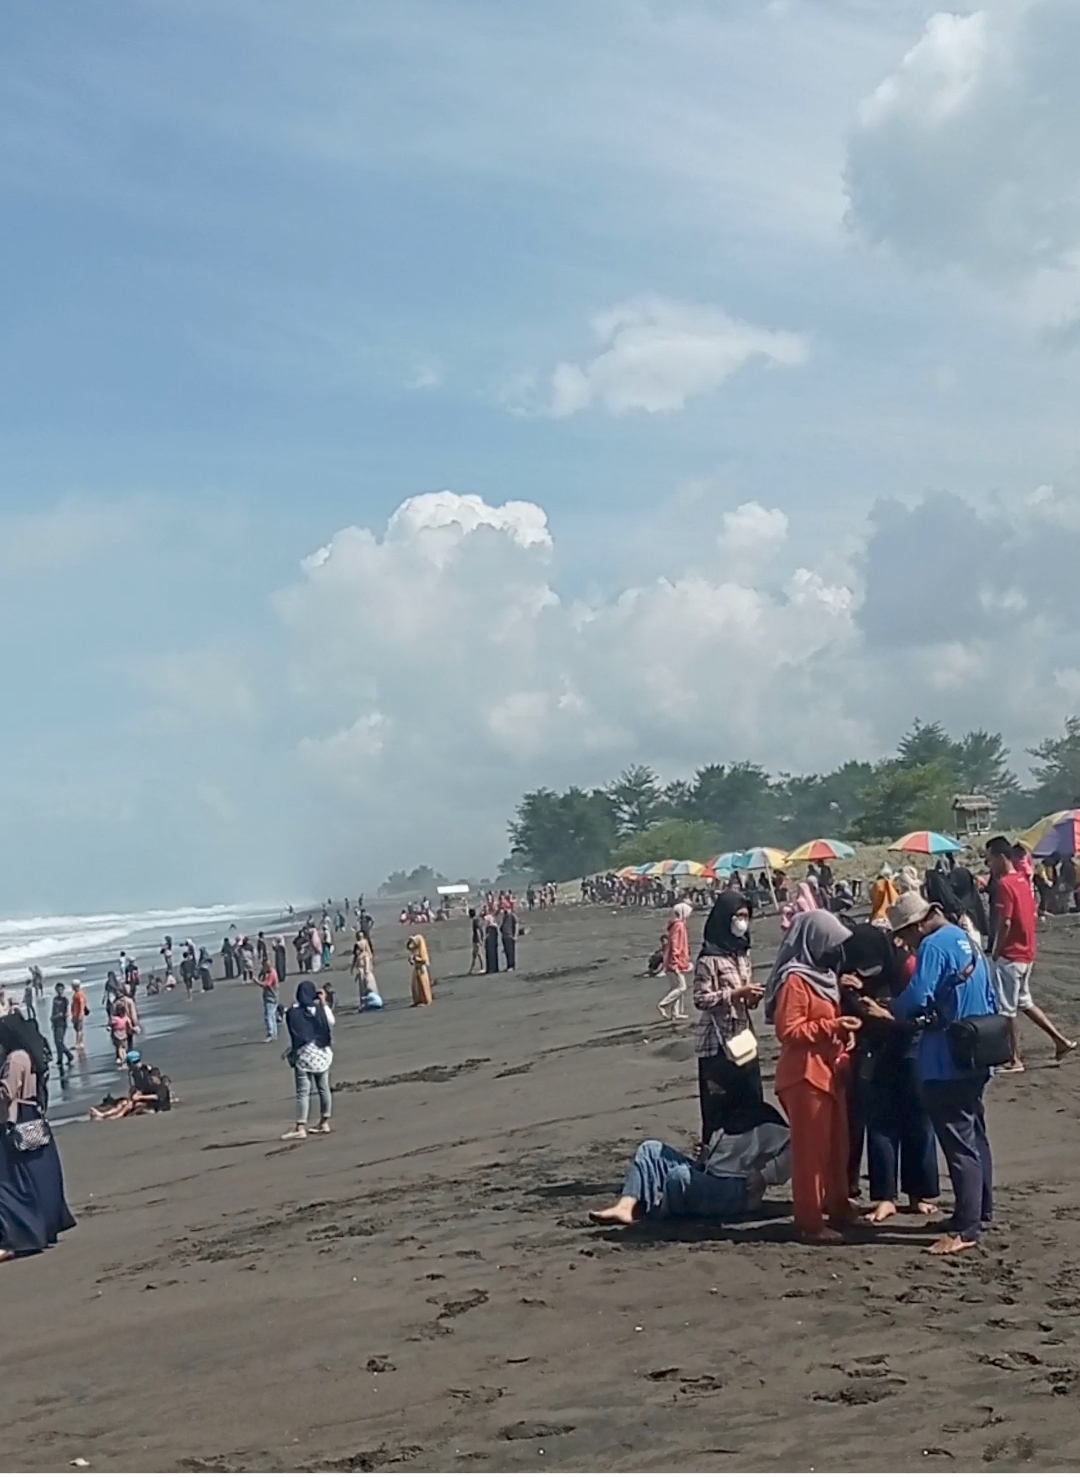 Pantai Mliwis Kebumen Adalah, Surga Tersembunyi di Jantung Jawa Tengah